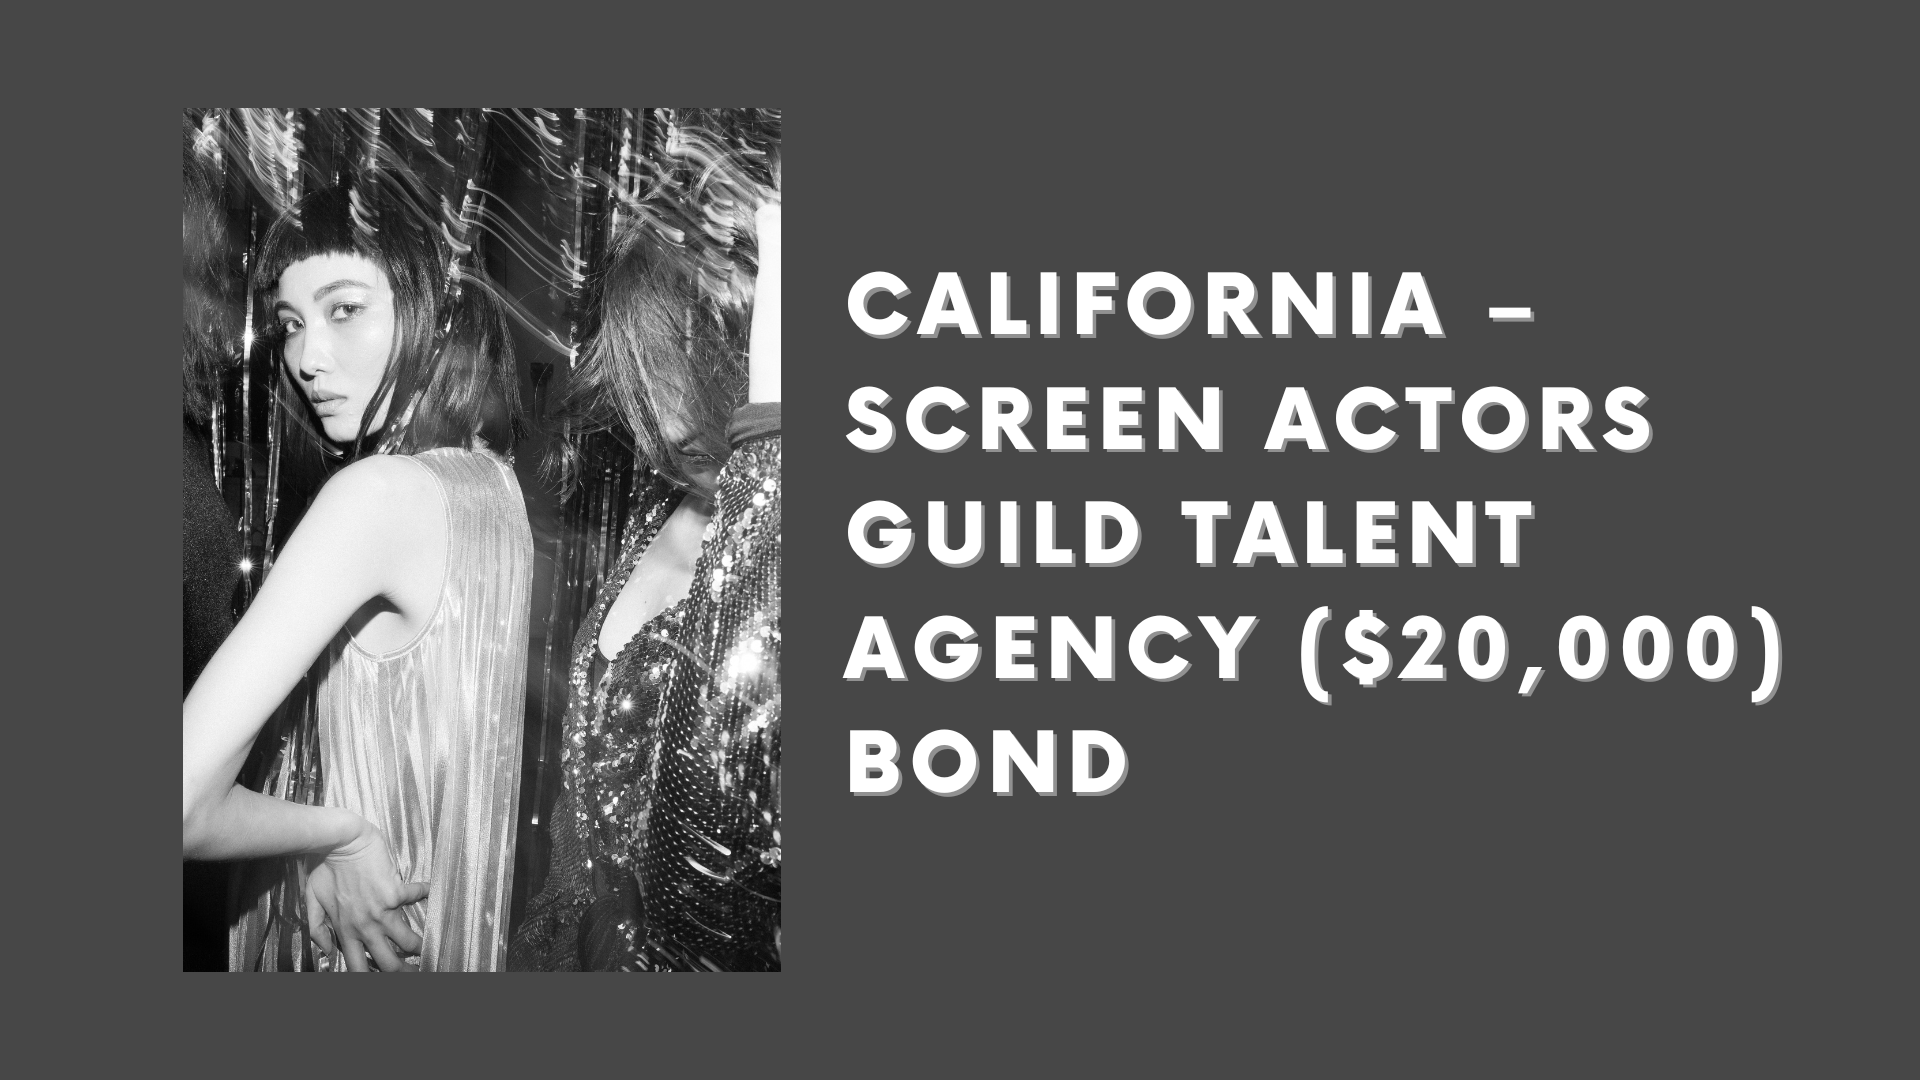 California – Screen Actors Guild Talent Agency ($20,000) Bond